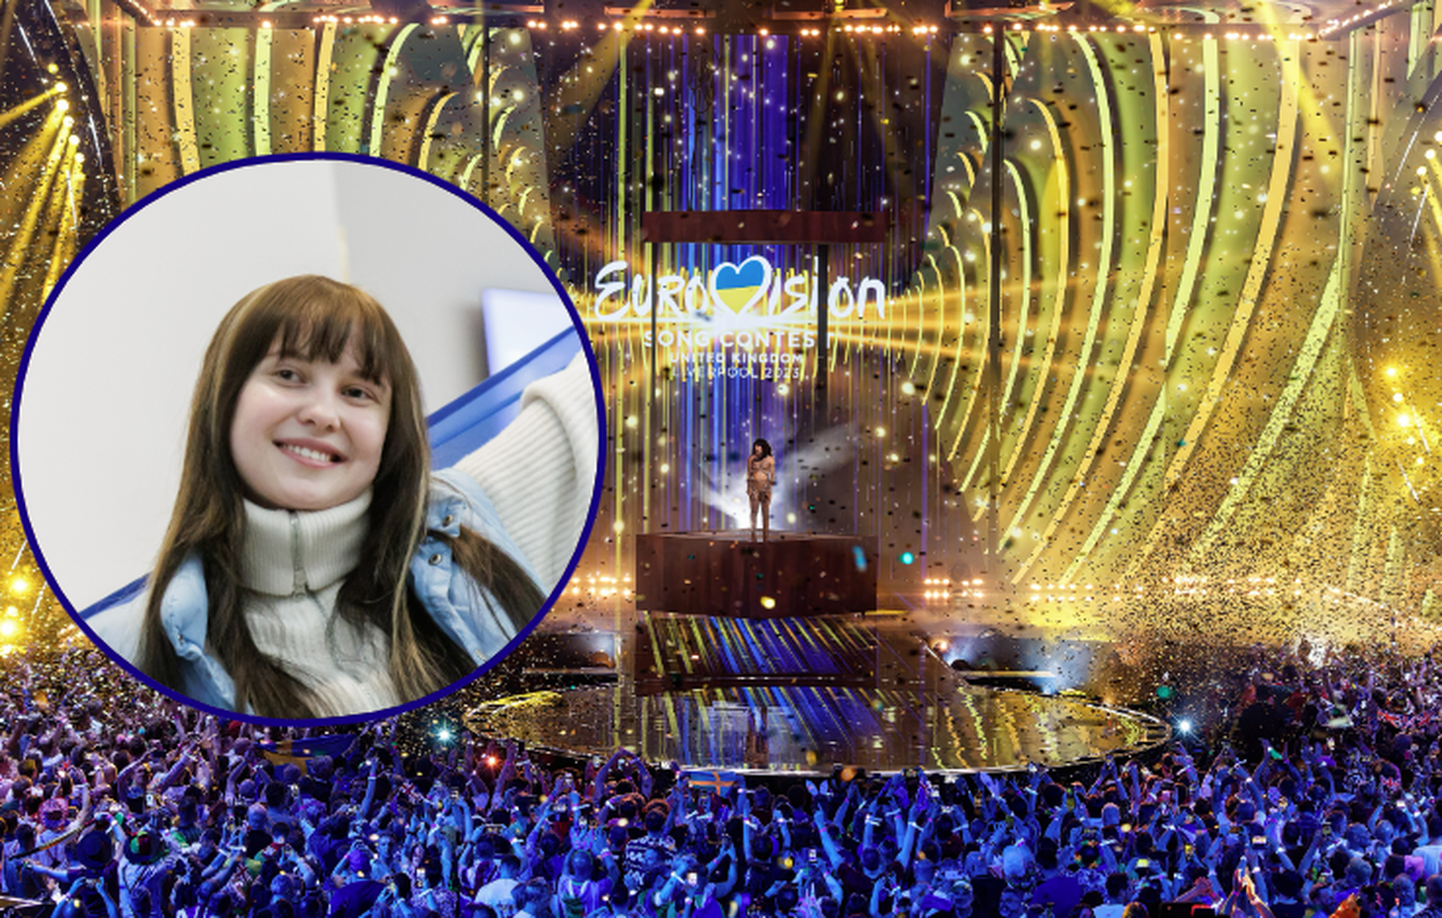 «В зале было очень хорошо слышно», - комментирует Алика крики фанатов в финале Евровидения.